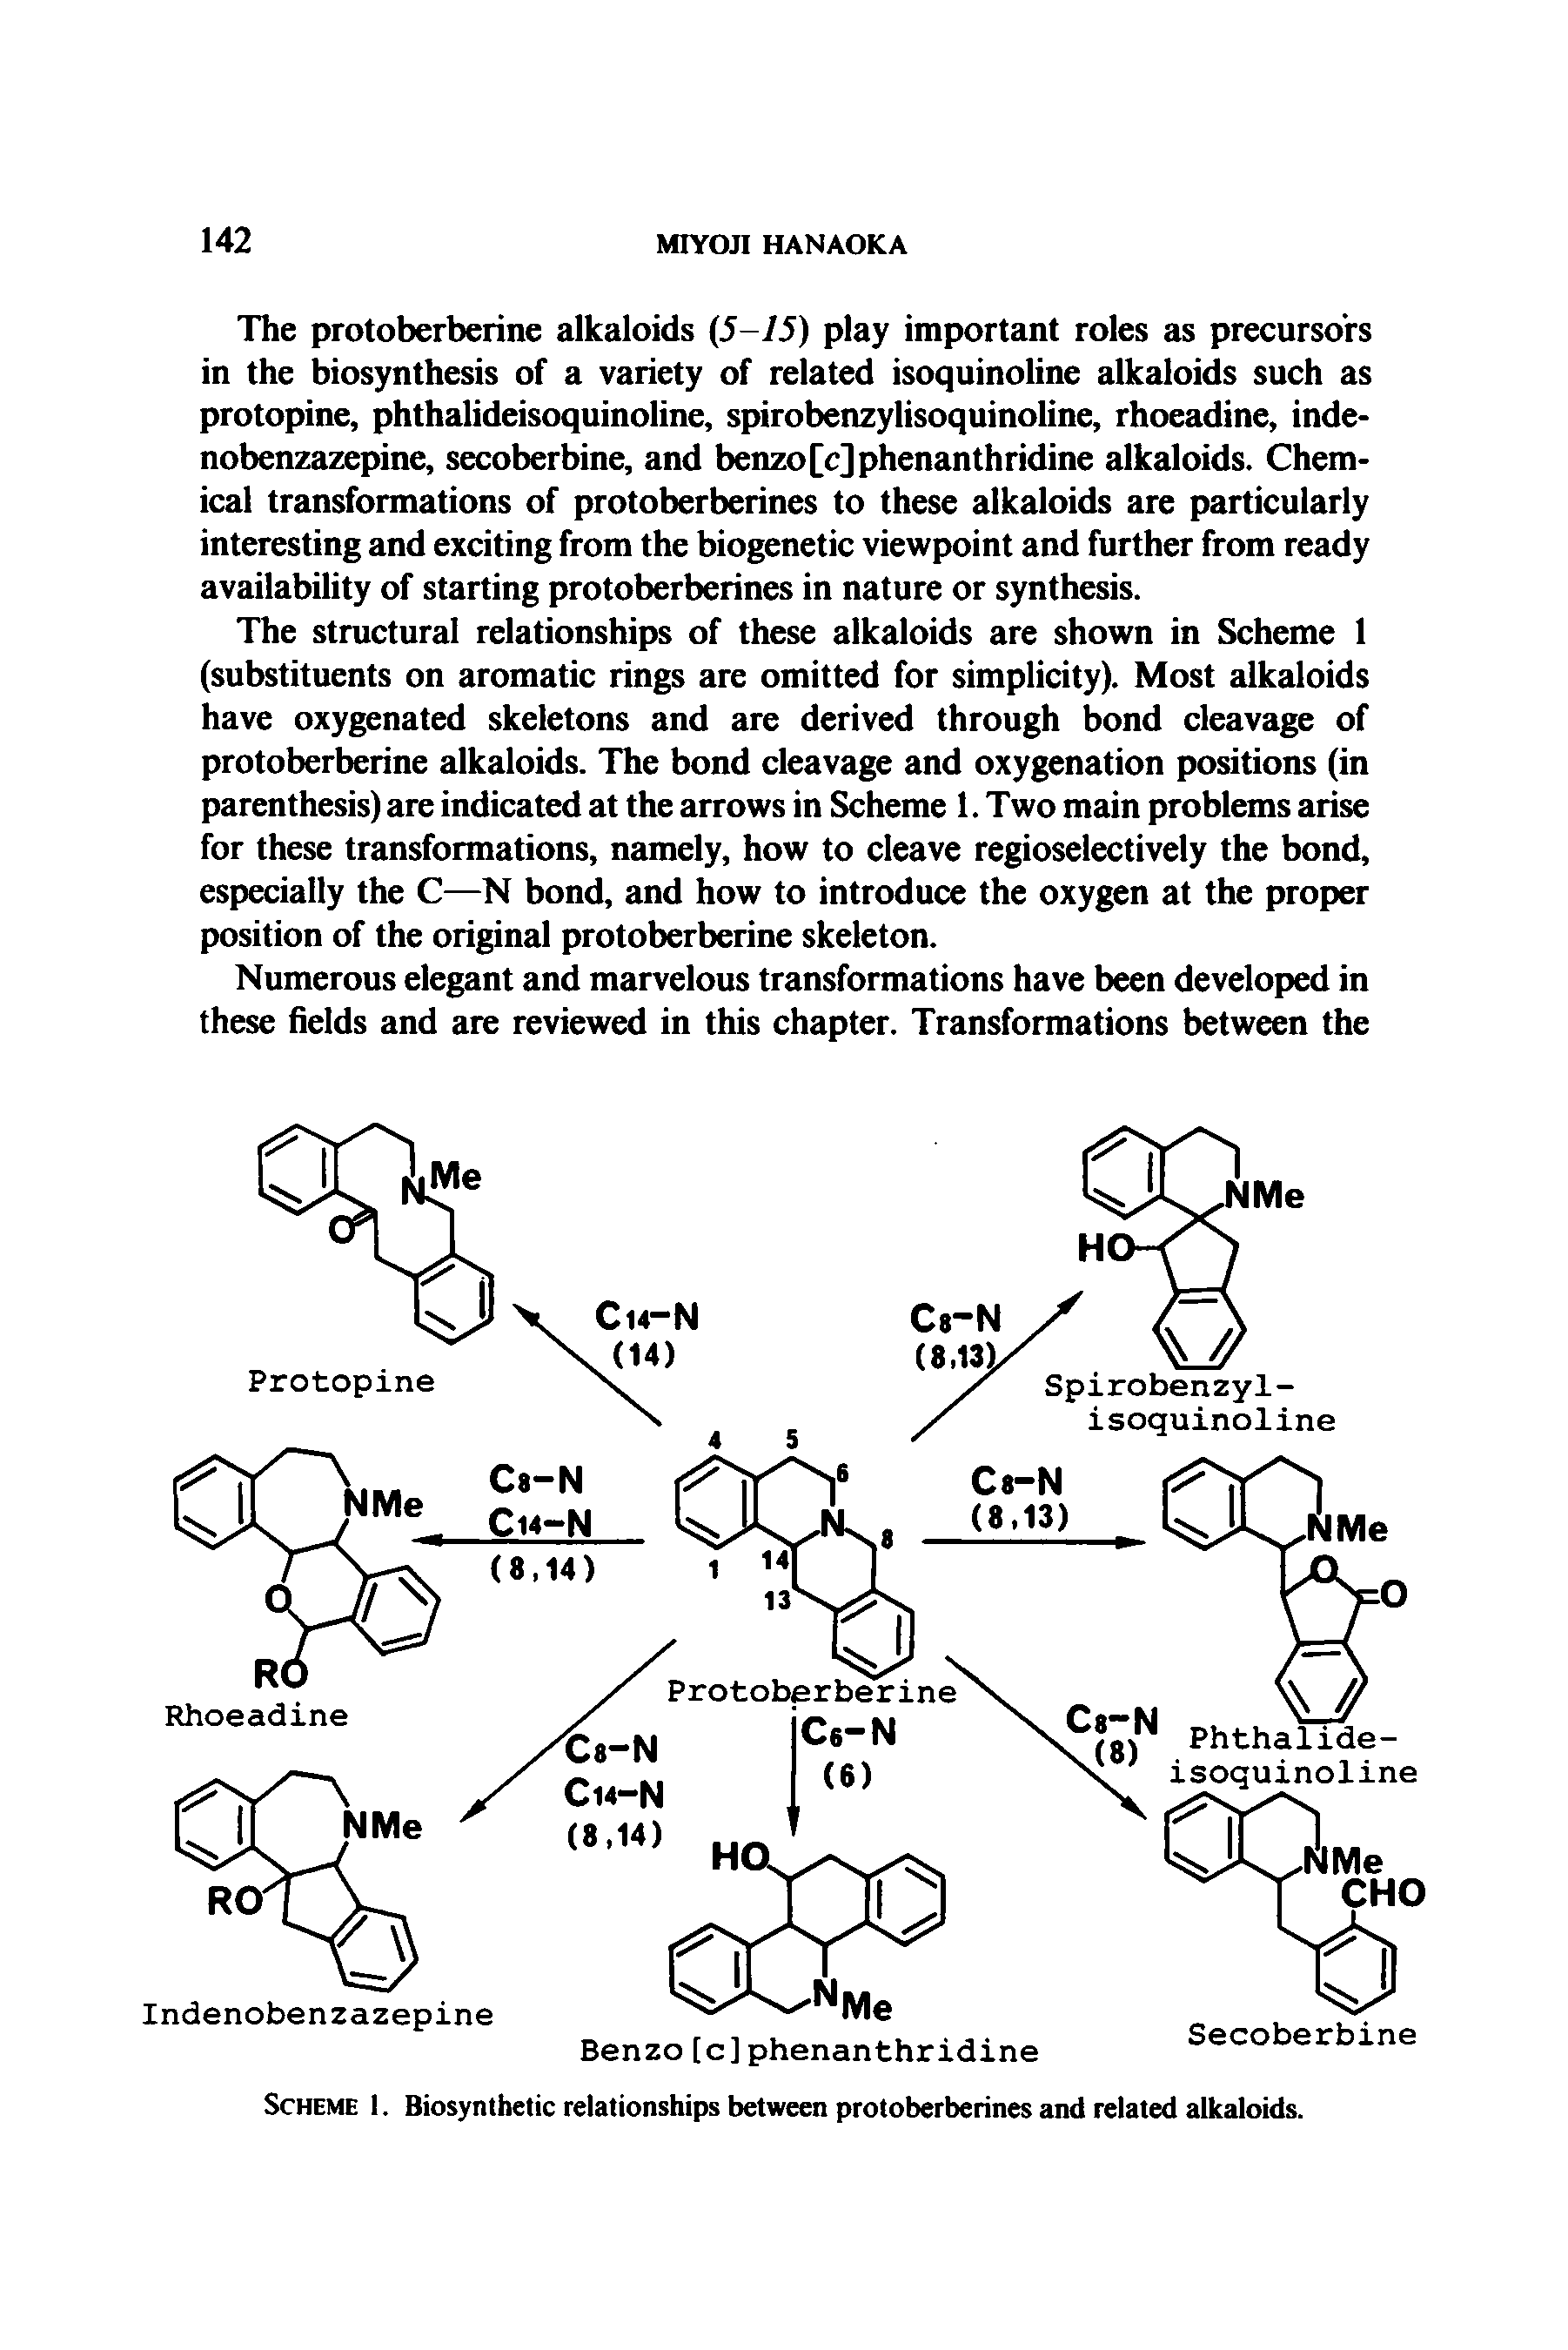 Scheme 1. Biosynthetic relationships between protoberberines and related alkaloids.